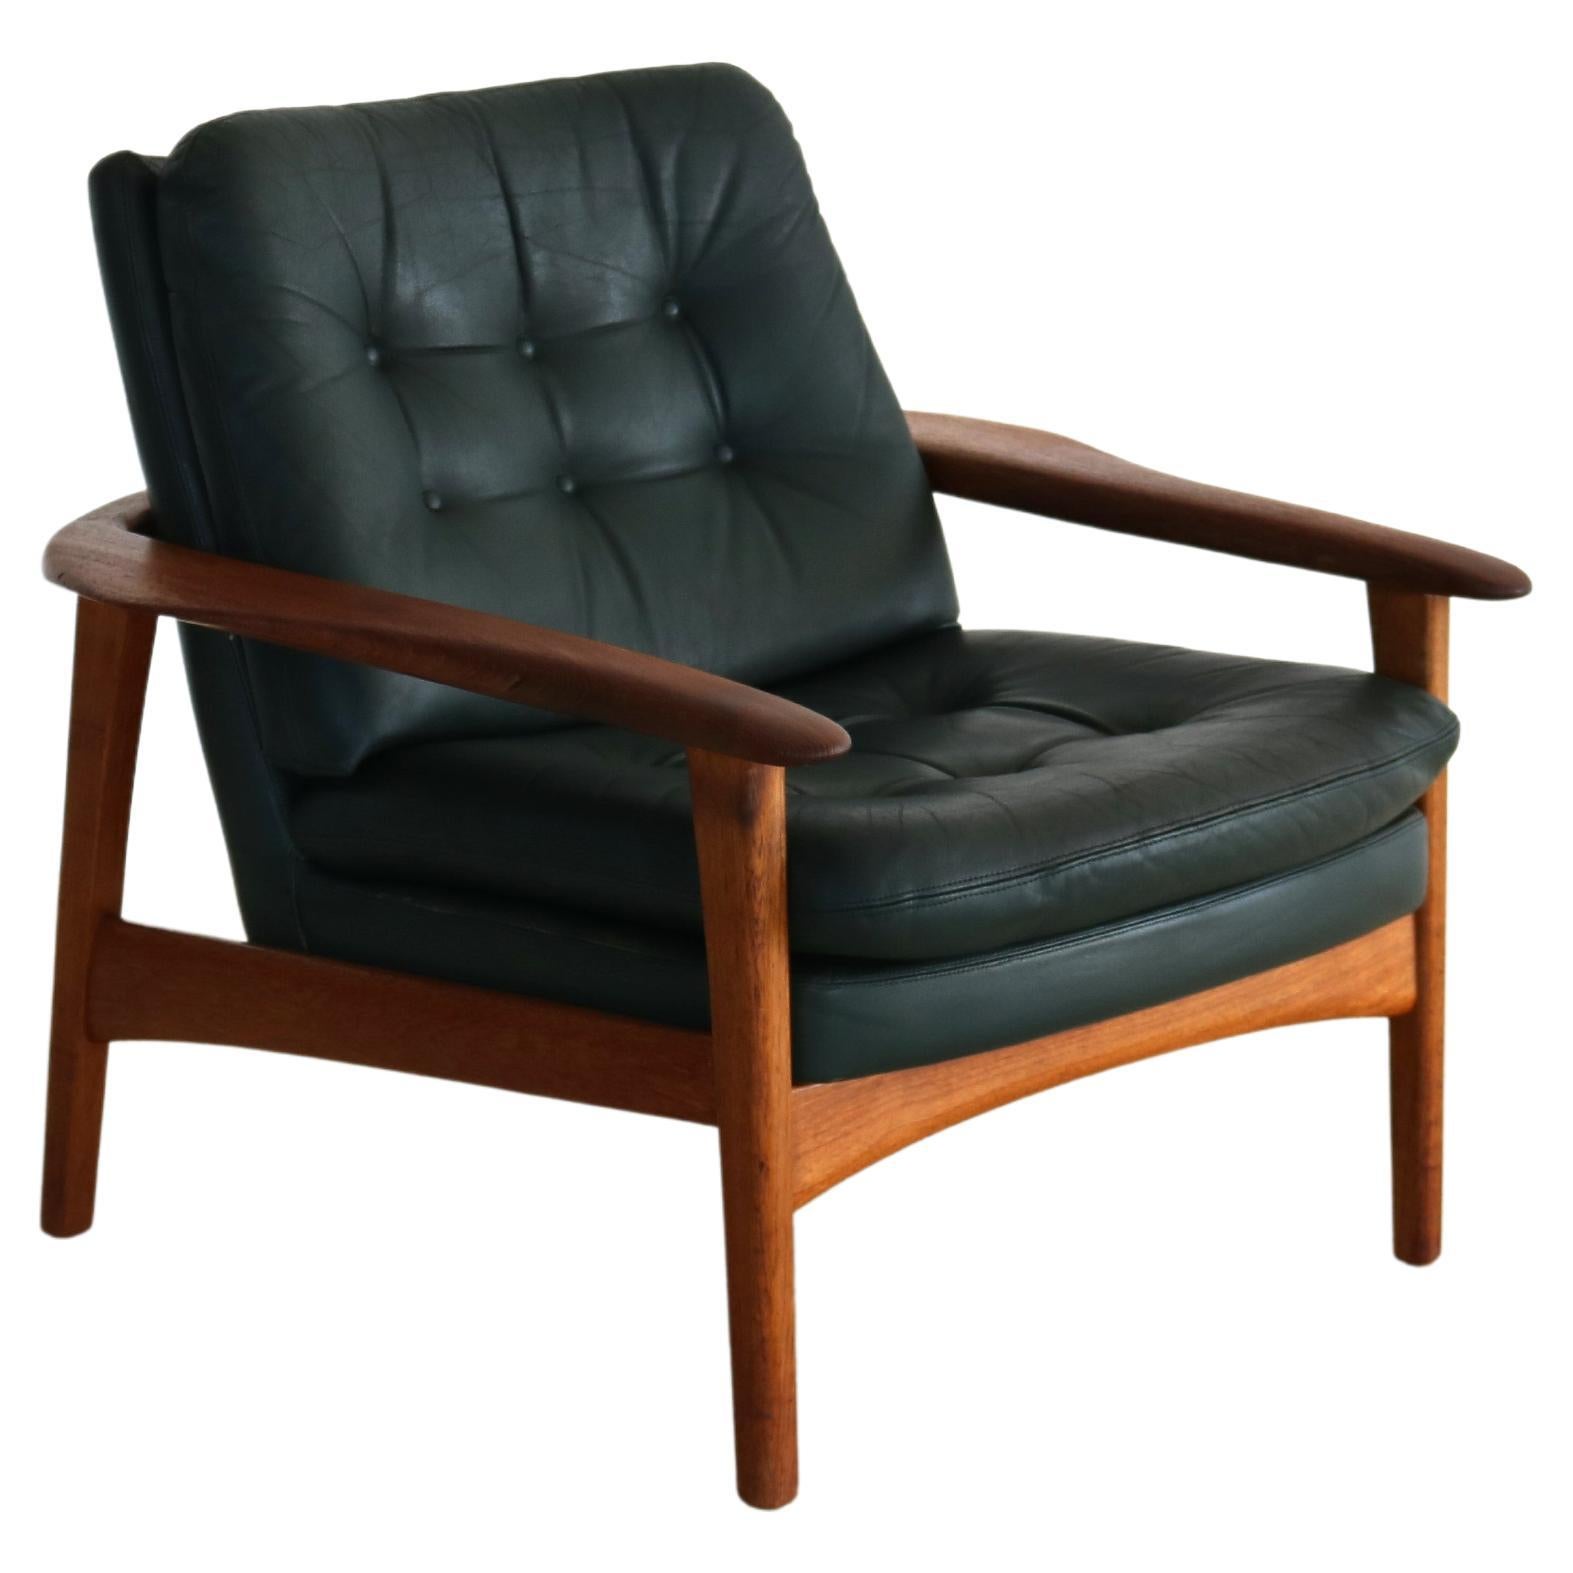 Vintage Easy Chair Teak Leather 60s Armchair